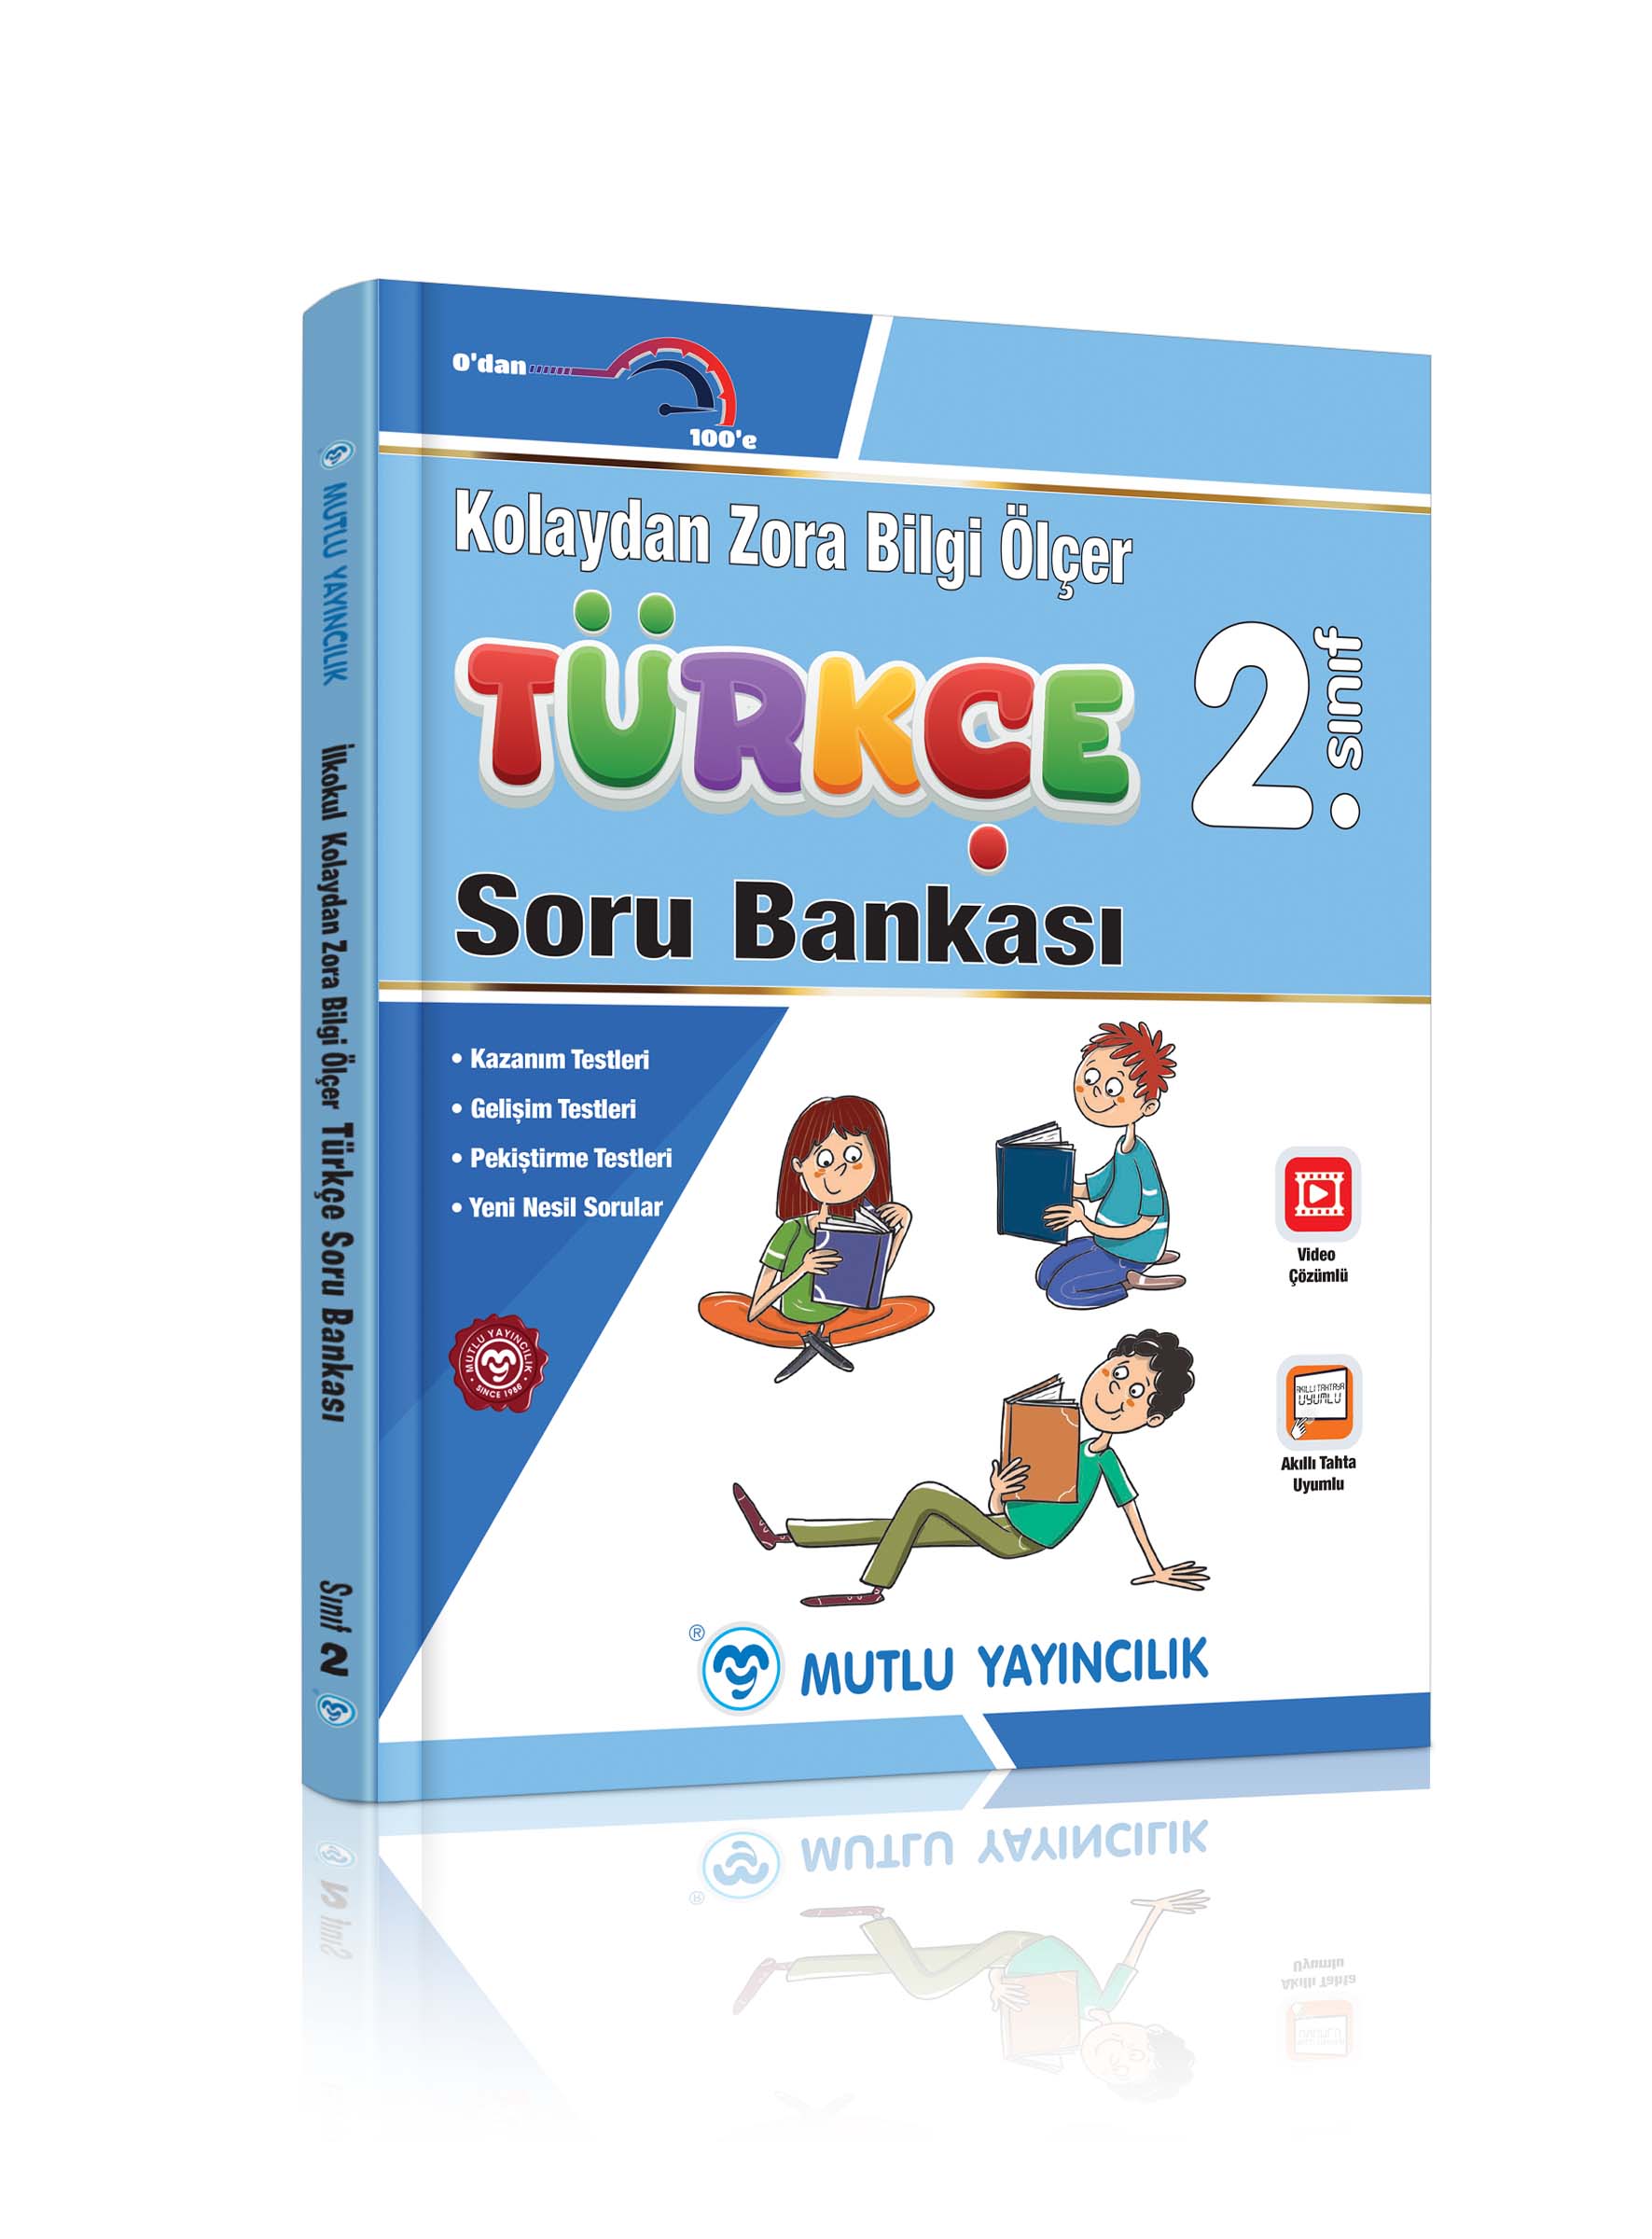 2 sınıf turkce bilgi olcer 3d